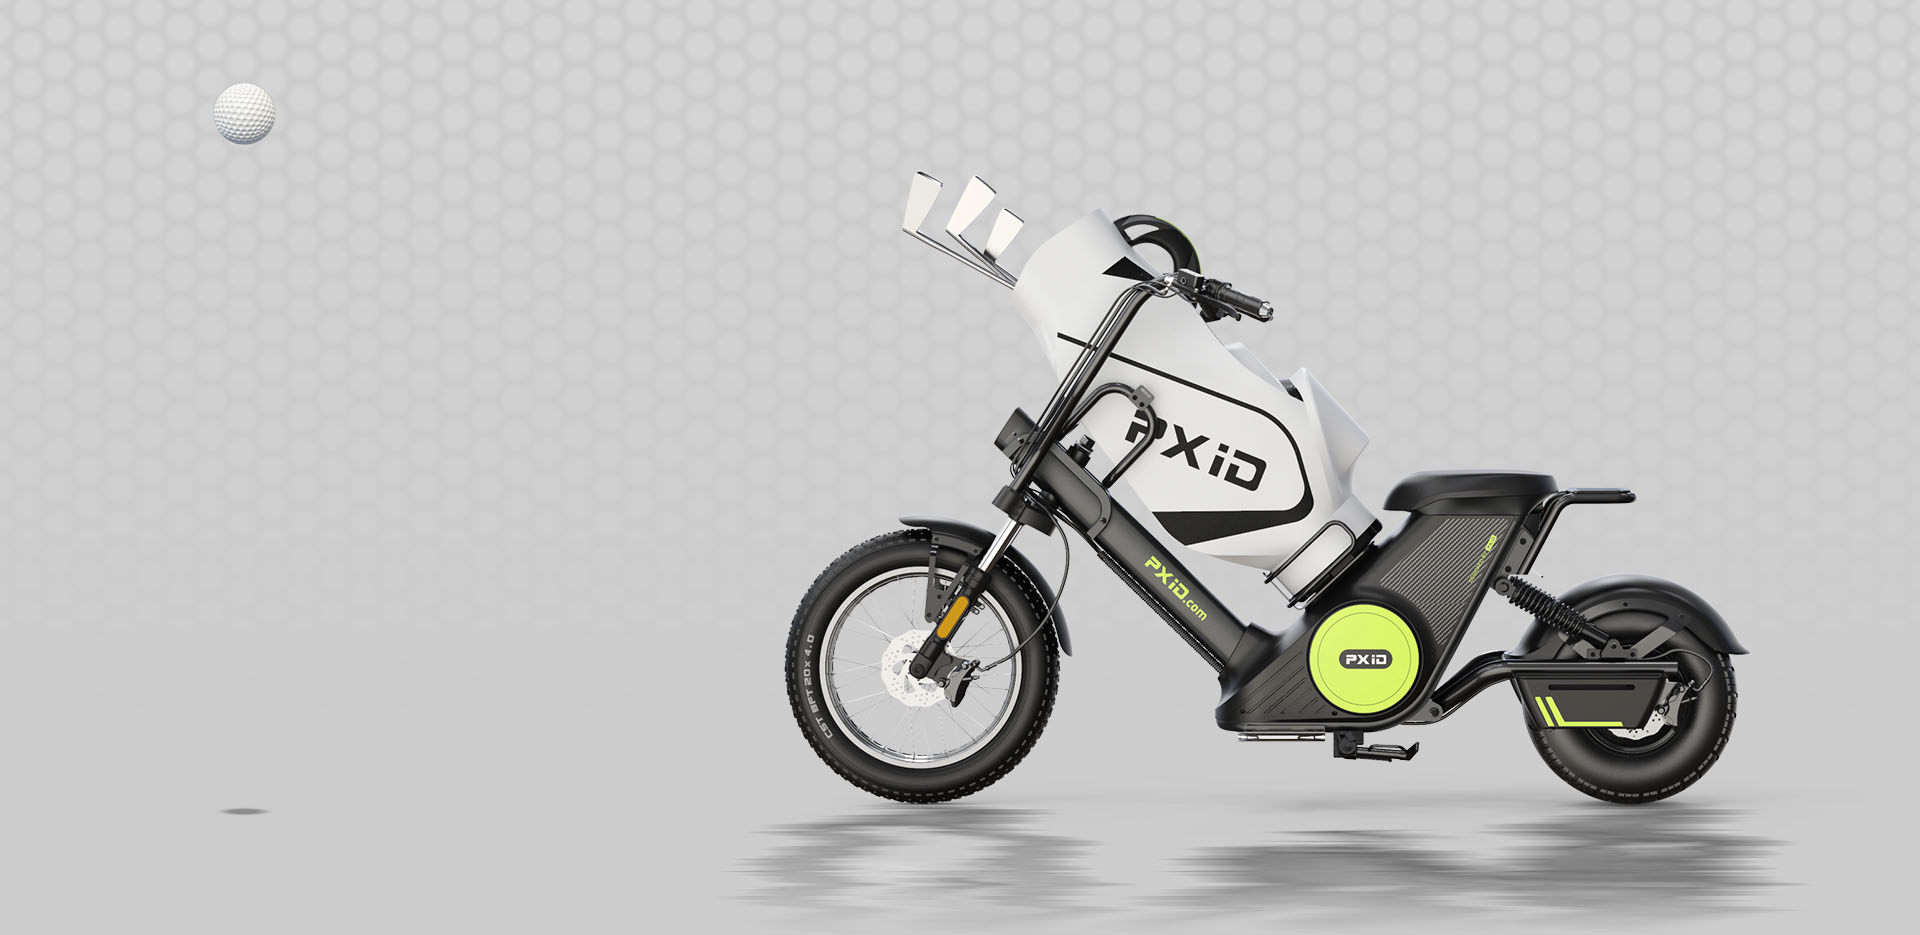 รถจักรยานยนต์ไฟฟ้าแบตเตอรี่แบบถอดได้ Citycoco 2000W พร้อมถุงกอล์ฟ รูปภาพเด่น